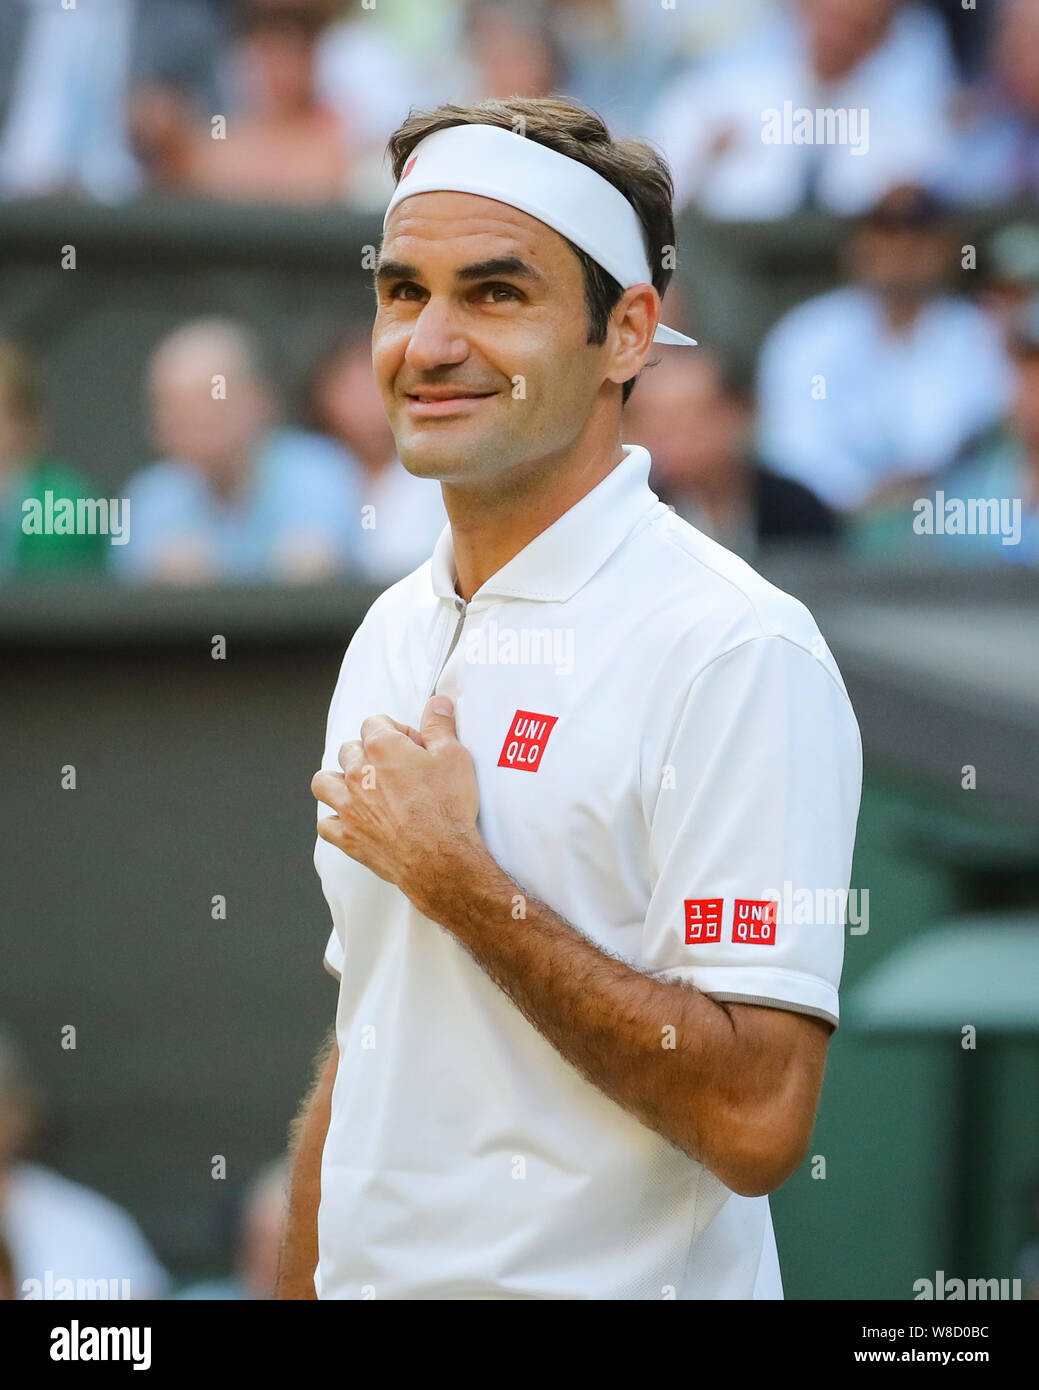 Seitenansicht der schweizer Tennisspieler Roger Federer lächelnd nach seinem Match während 2019 Wimbledon Championships, London, England, Vereinigtes Königreich Stockfoto